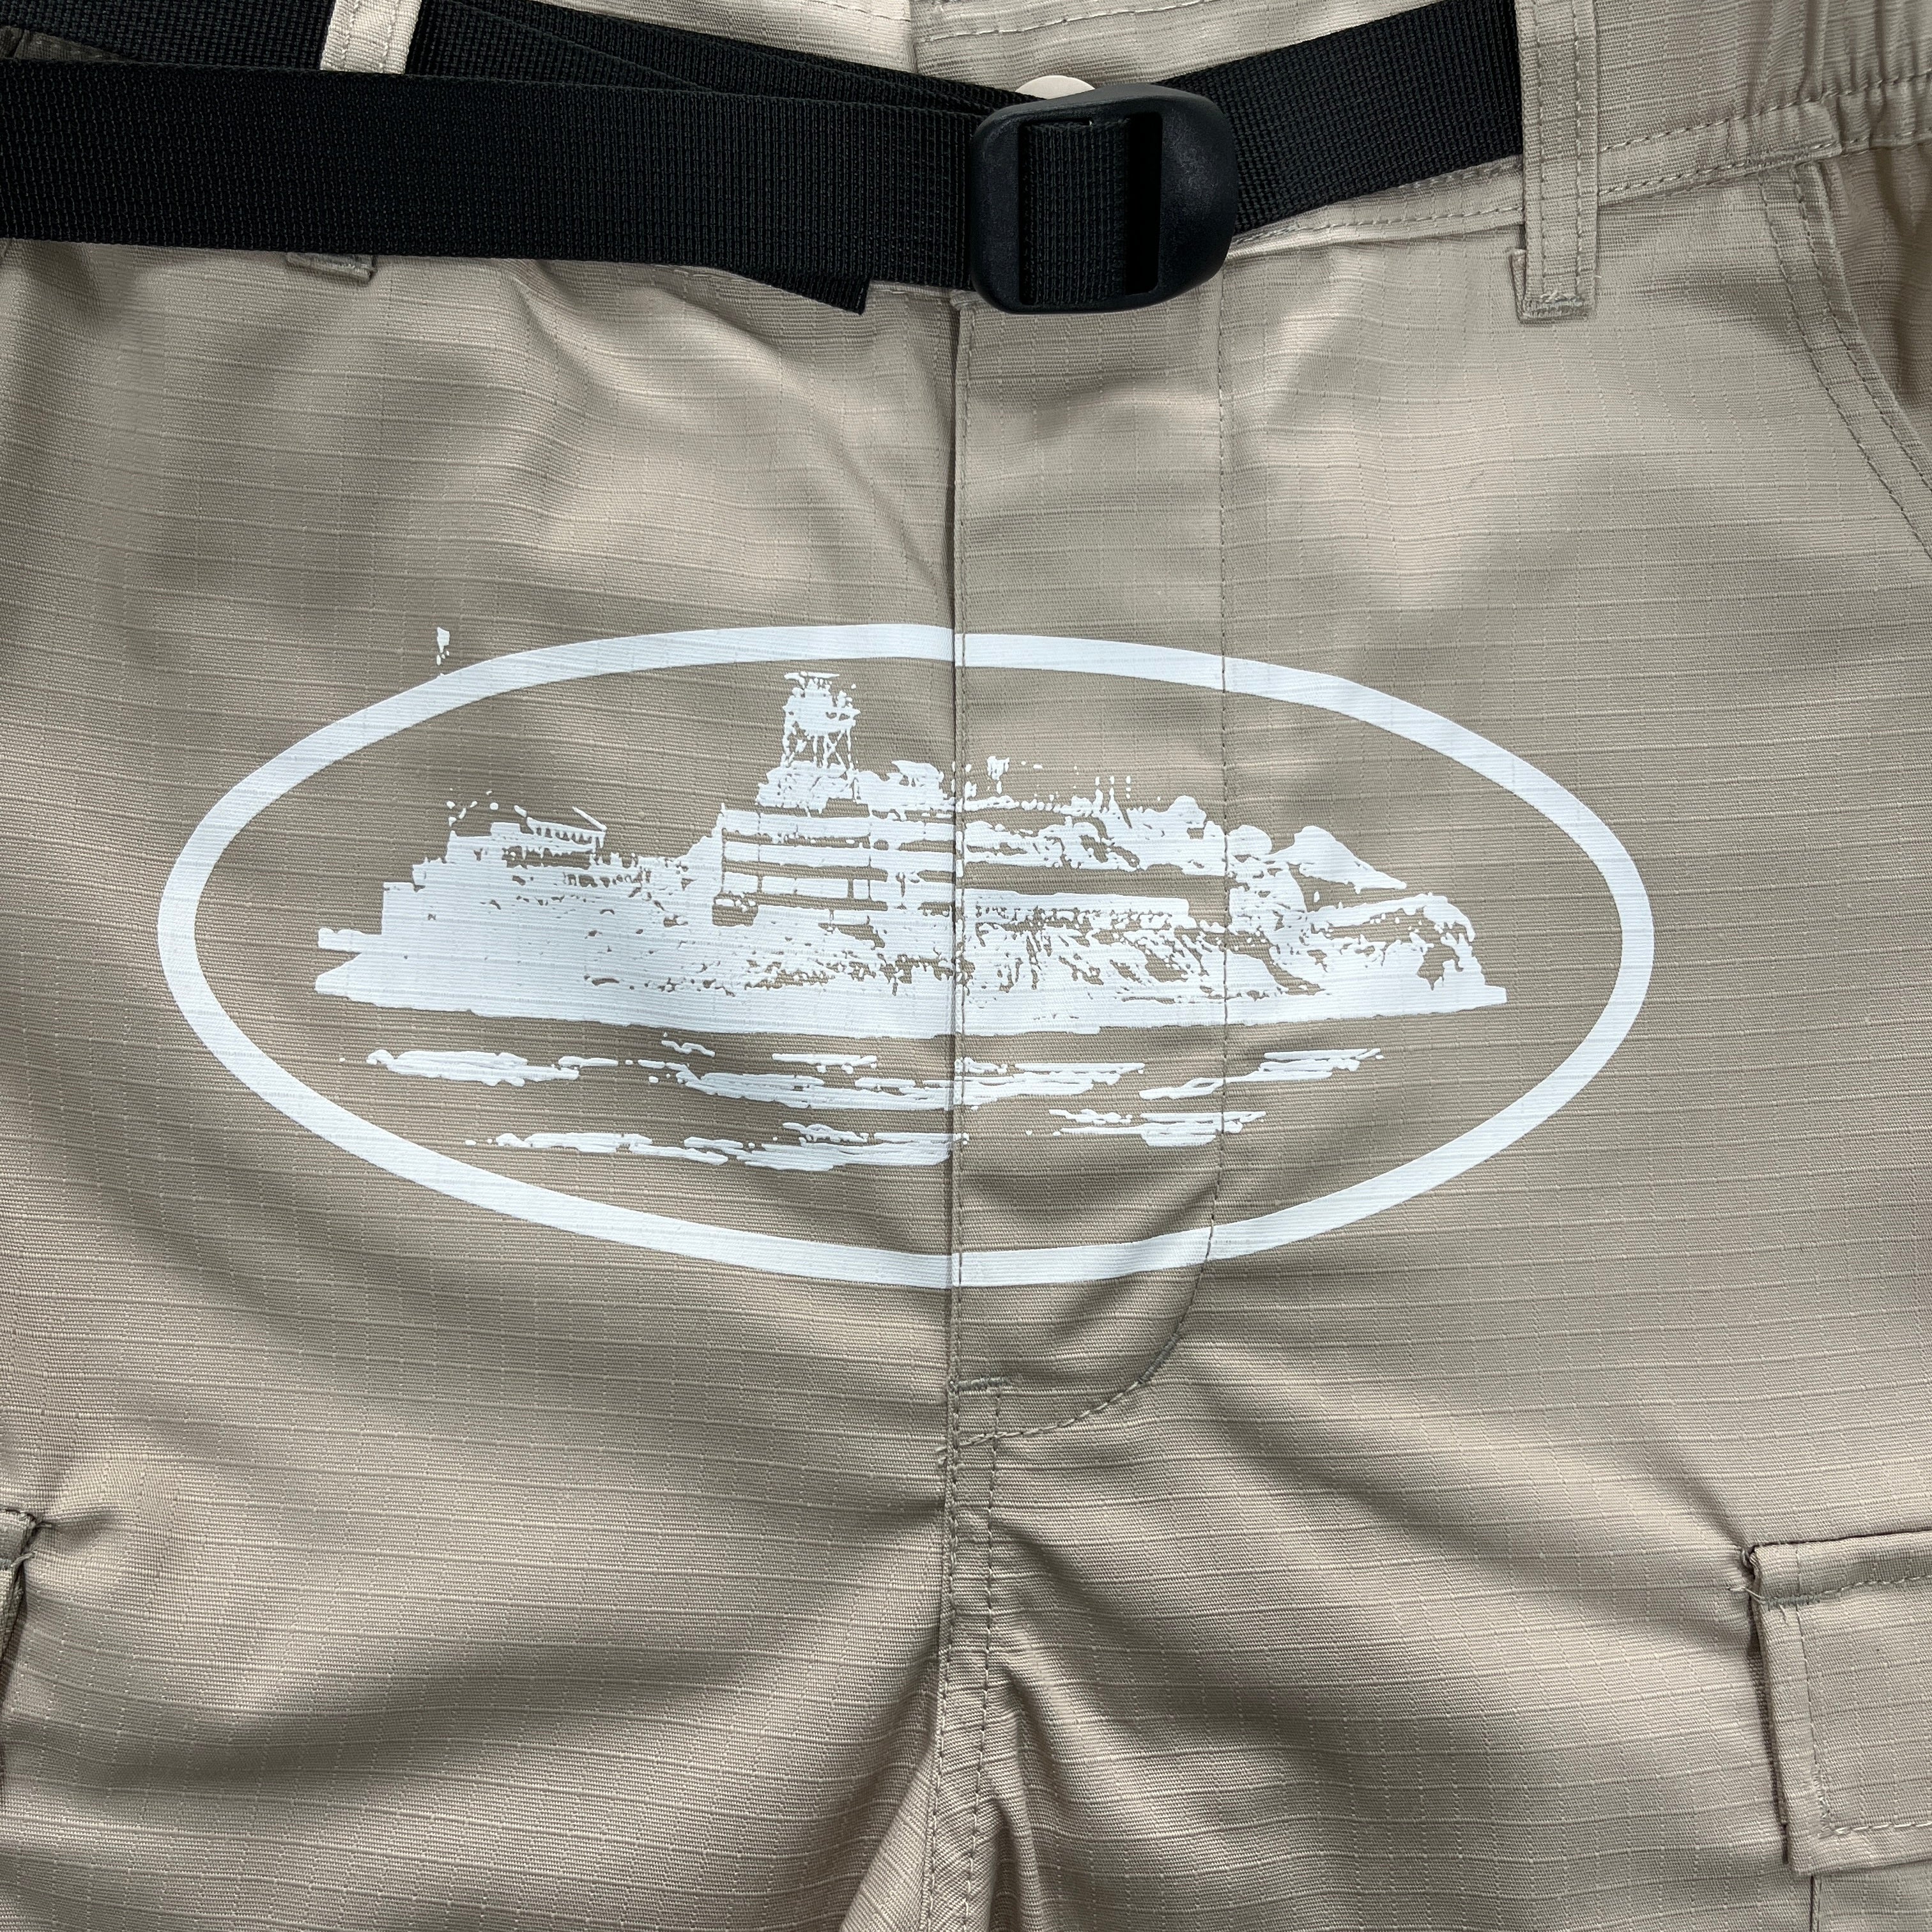 Khaki OG Cargos shorts